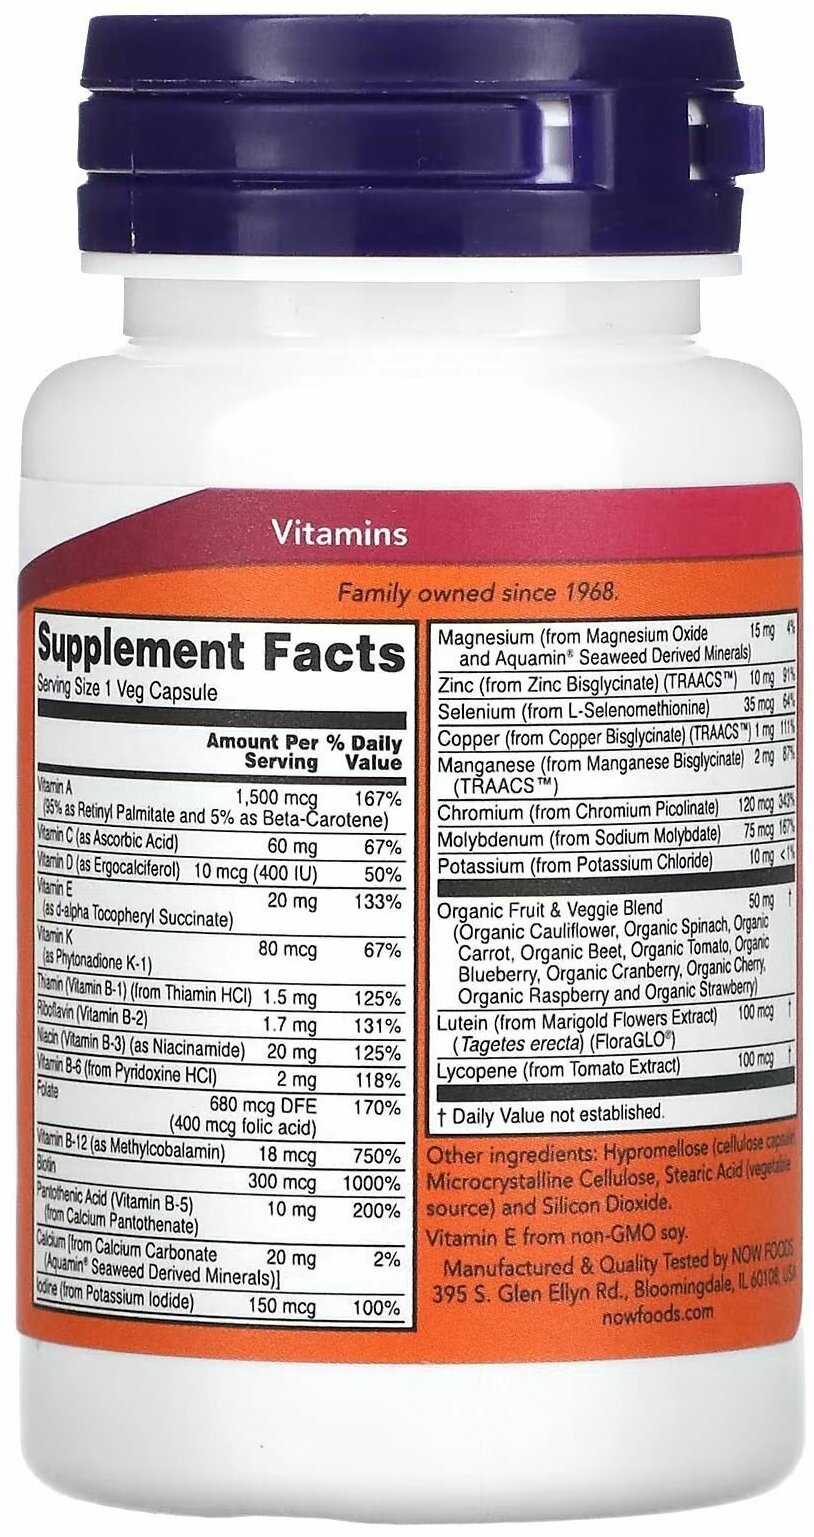 NOW Foods, Daily Vits, мультивитамины и микроэлементы, 30 вегетарианских капсул